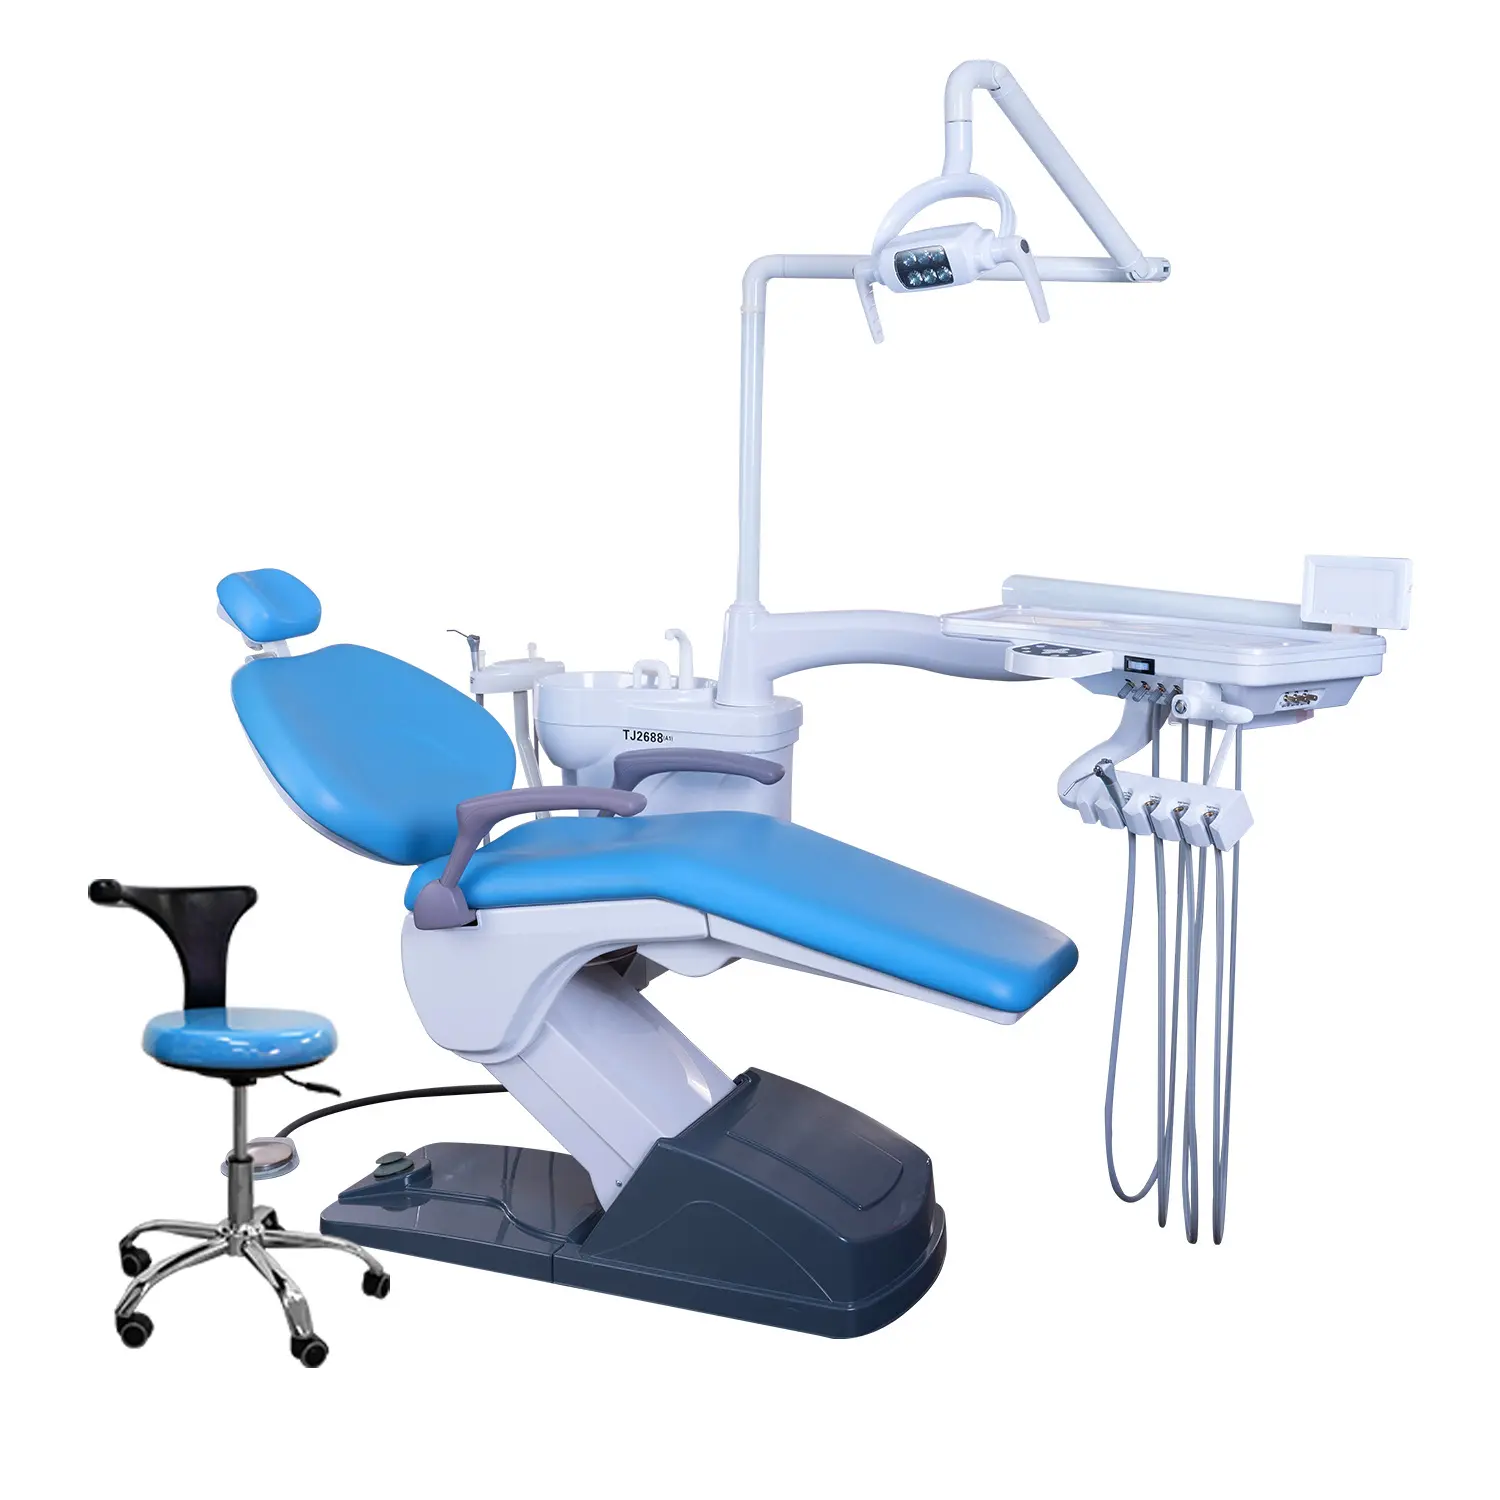 زهرة الطبية الساخن بيع الأسنان معدات رخيصة المريض الأسنان وحدة كرسي طبيب أسنان كامل الخيار للاسنان عيادة